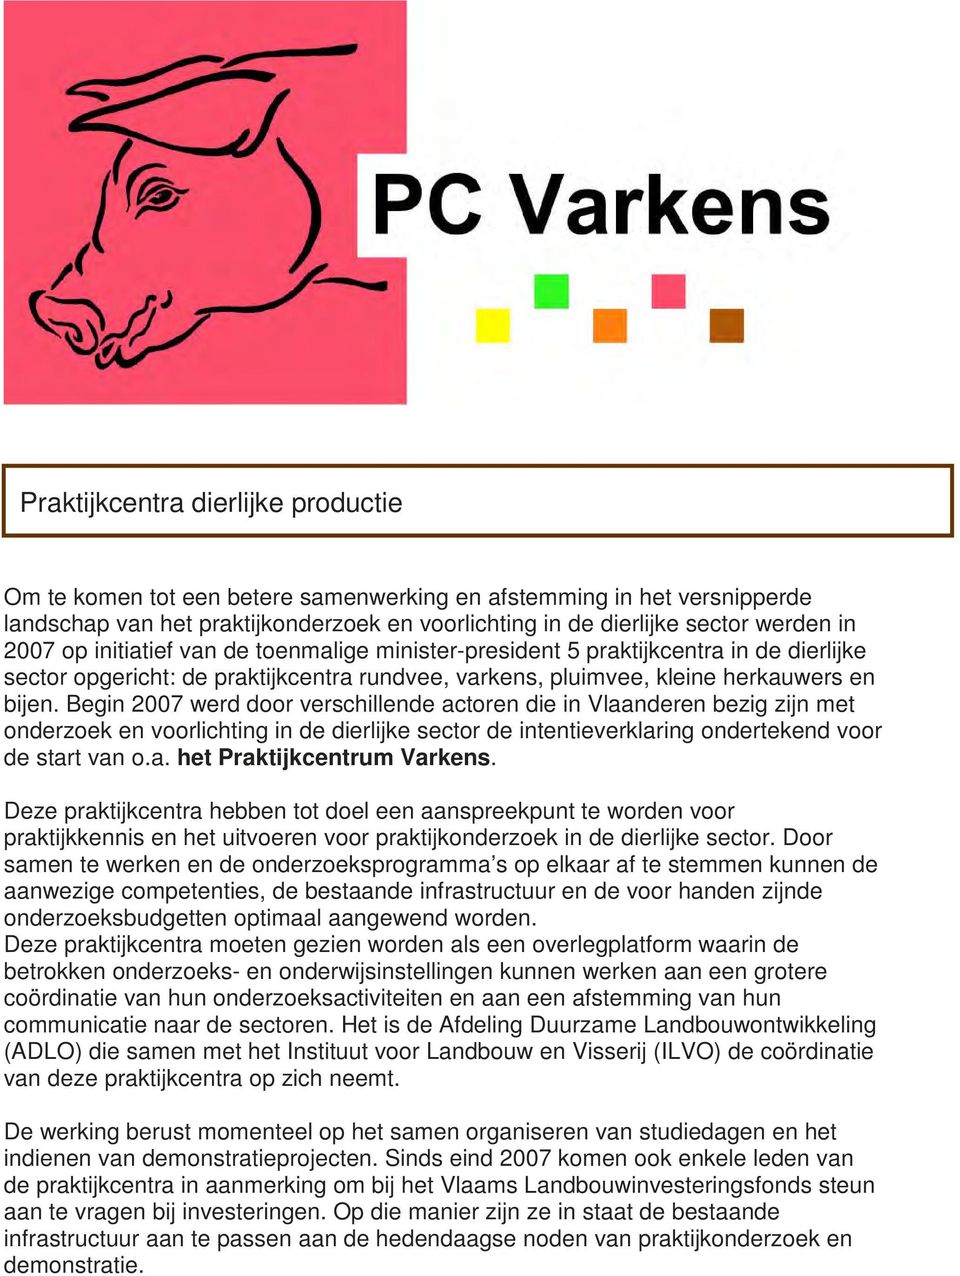 Begin 2007 werd door verschillende actoren die in Vlaanderen bezig zijn met onderzoek en voorlichting in de dierlijke sector de intentieverklaring ondertekend voor de start van o.a. het Praktijkcentrum Varkens.